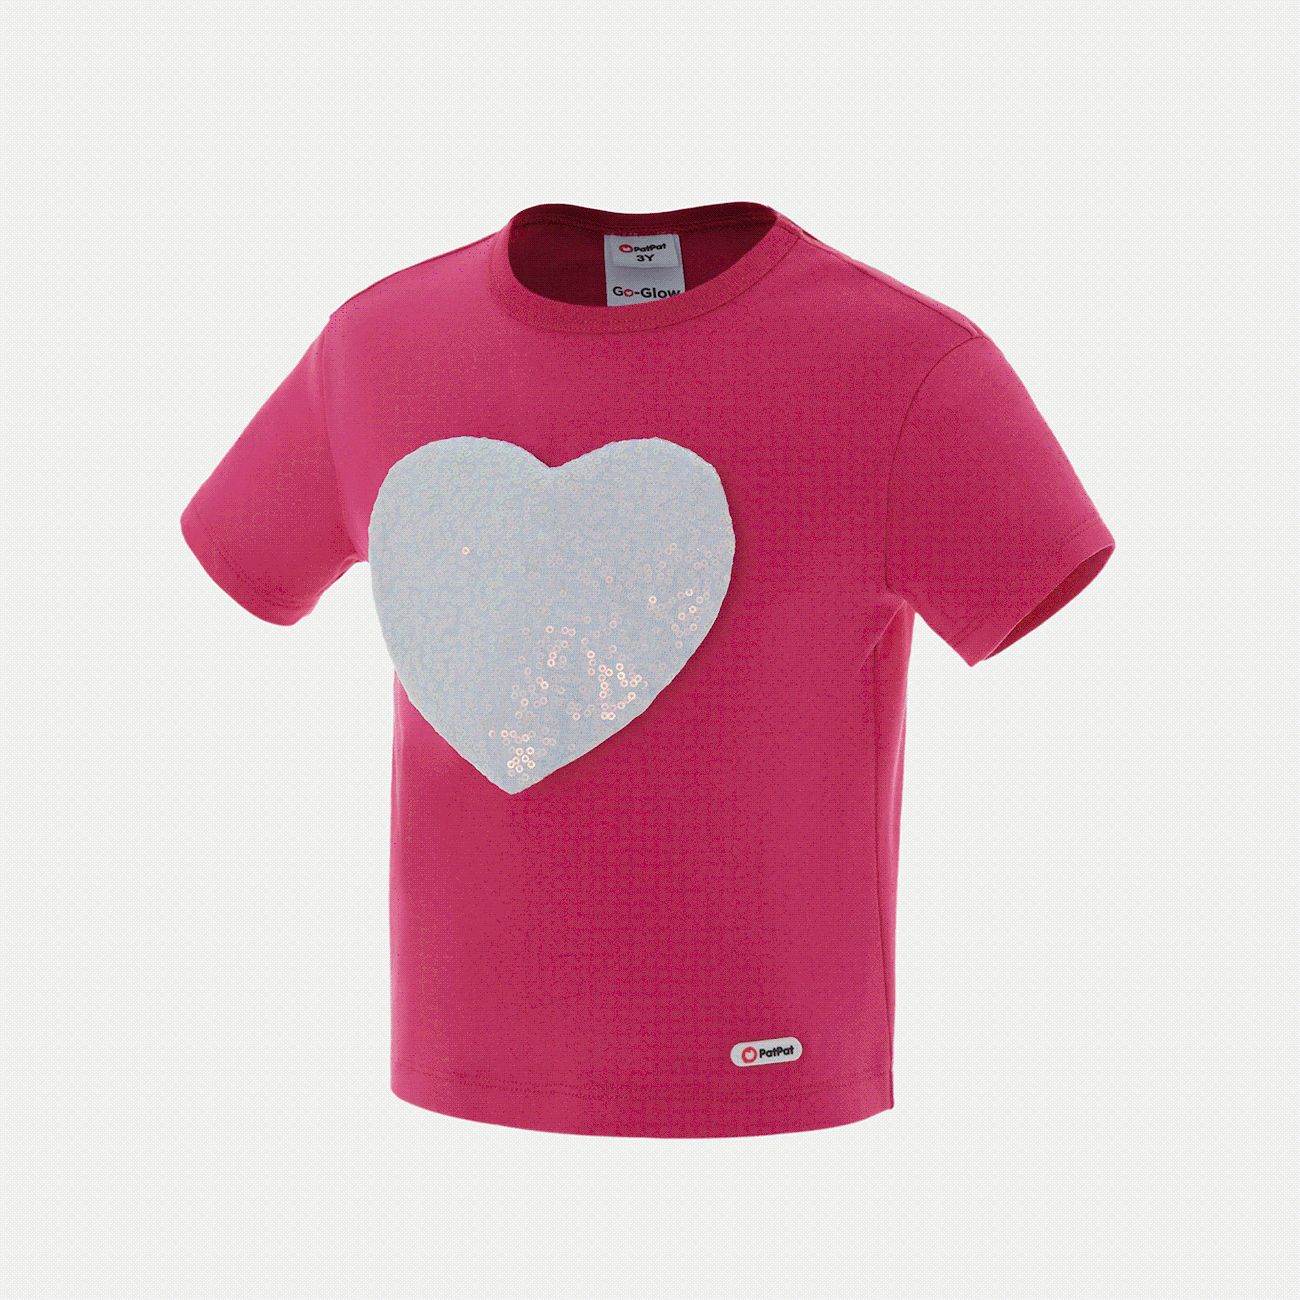 Enfant en bas âge Fille Hypersensible Doux Manches courtes T-Shirt Rose Vif big image 1